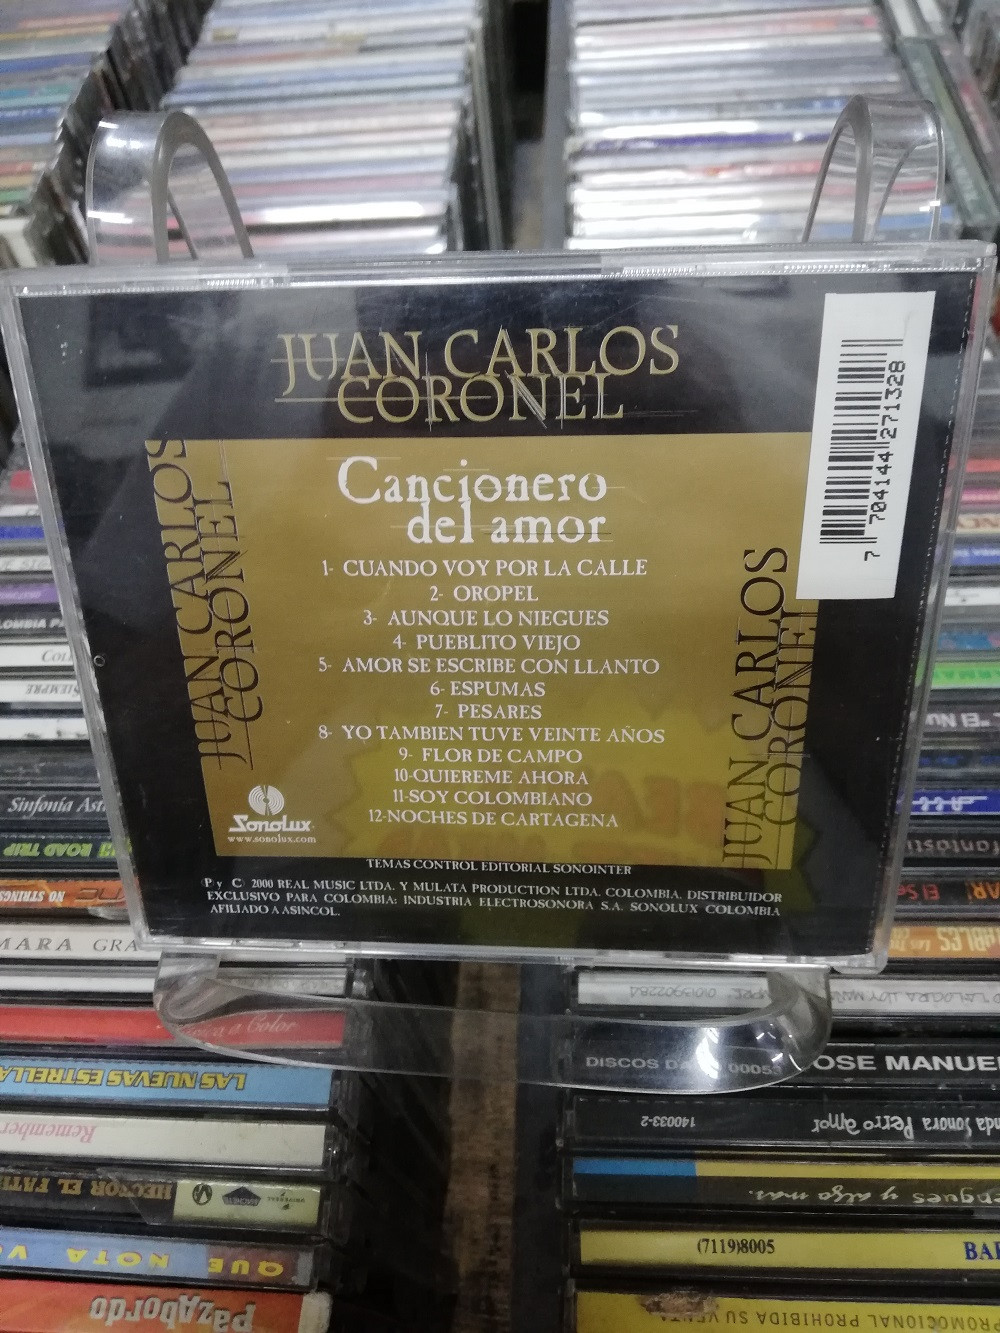 Imagen CD JUAN CARLOS CORONEL - CANCIONERO DE AMOR 2